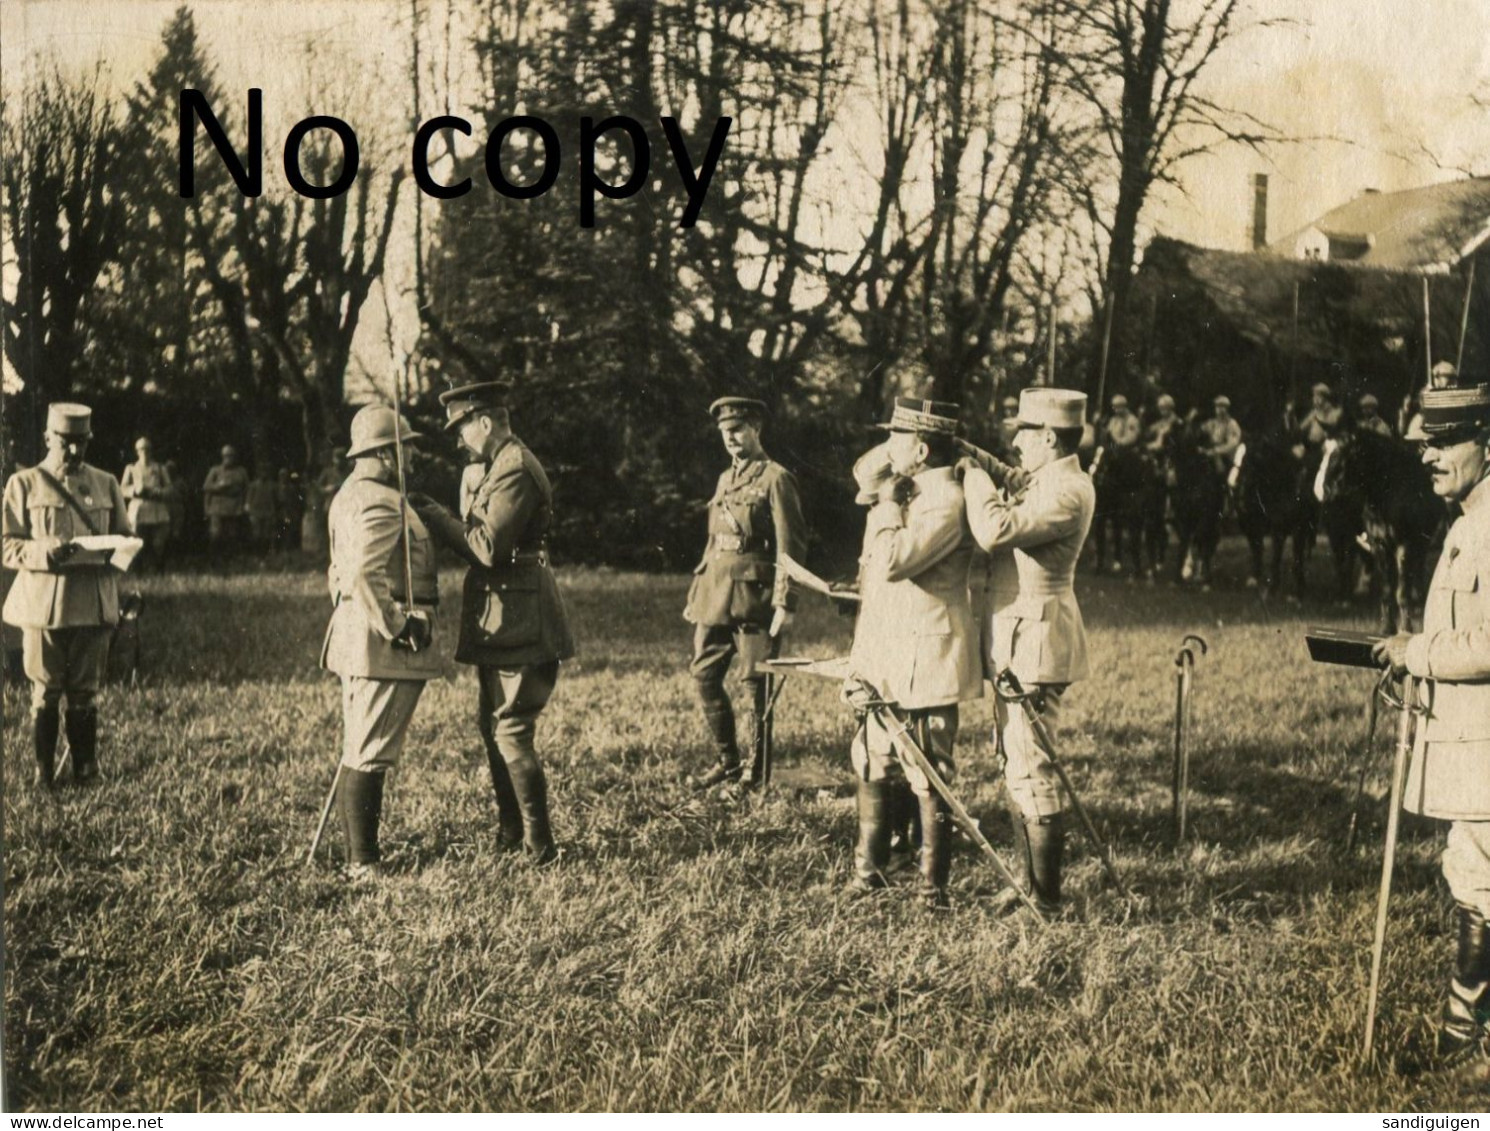 PHOTO FRANCAISE - OFFICIERS AU QG DE LA 5e ARMEE A JONCHERY SUR VESLE PRES DE TINQUEUX - REIMS MARNE GUERRE 1914 1918 - Oorlog, Militair